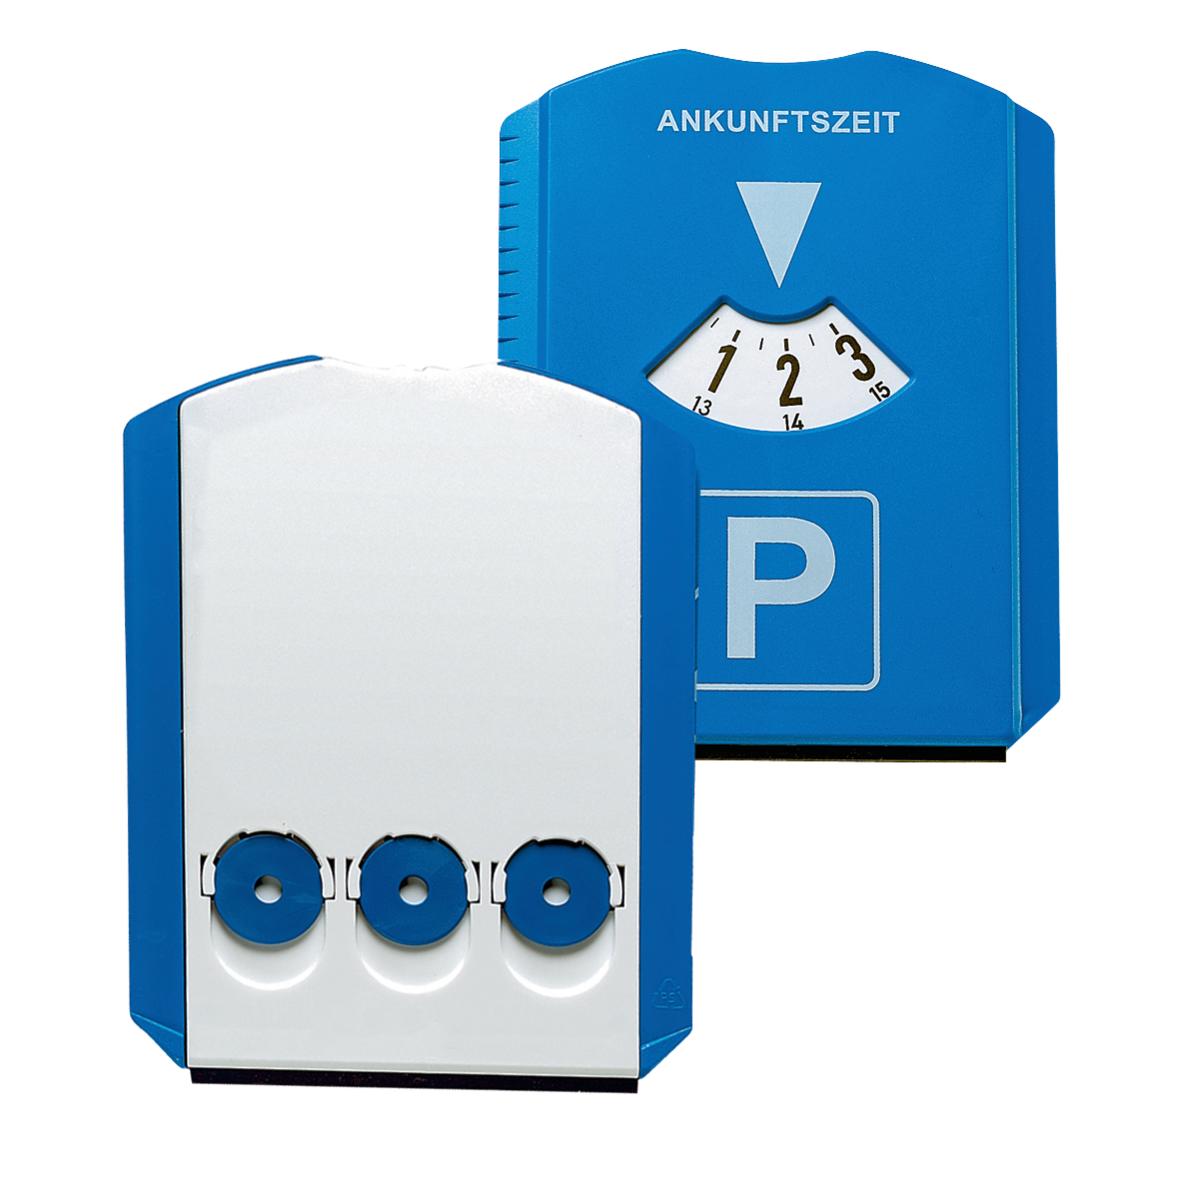 Parkscheibe Prime mit Chips, blau/weiß-04251003-00000